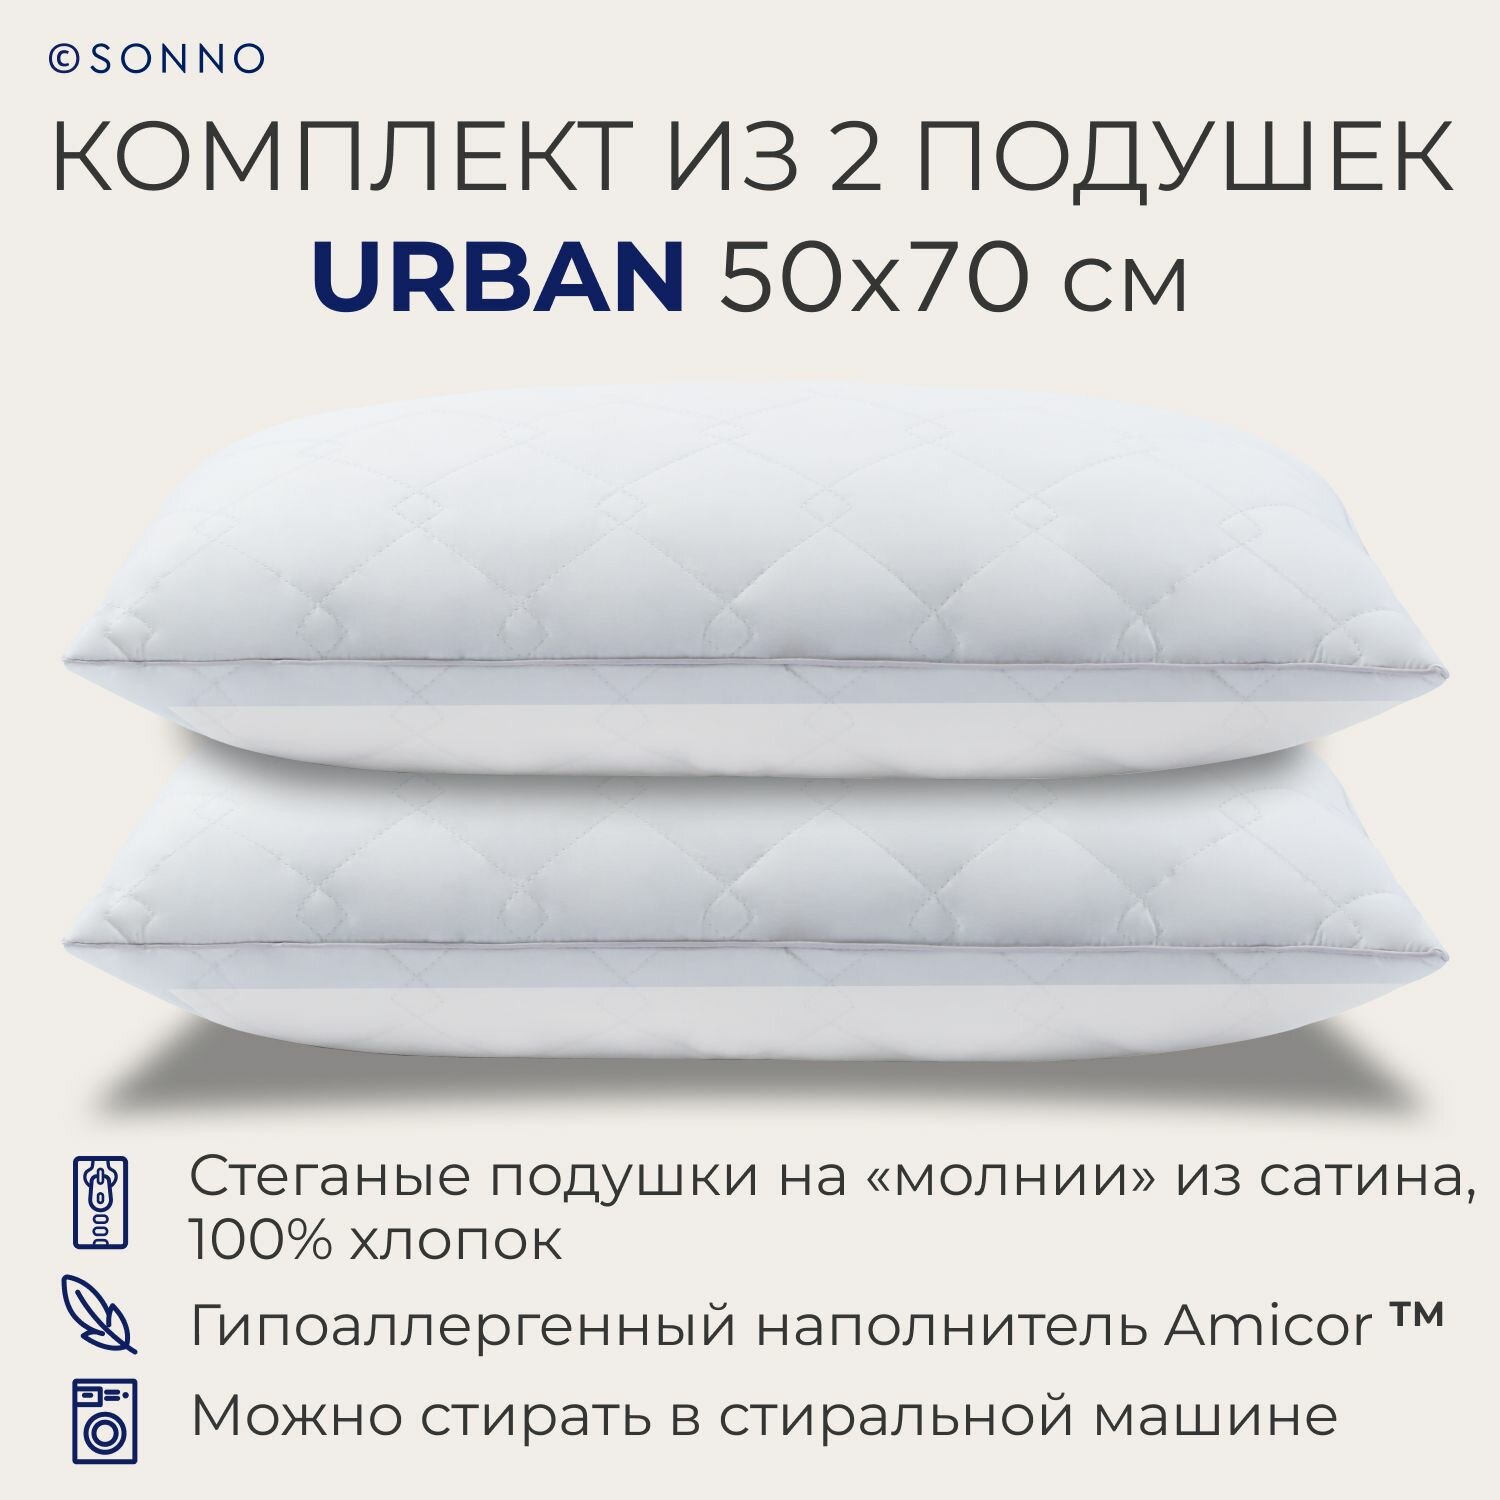 Комплект из двух подушек для сна SONNO URBAN гипоаллергенный наполнитель Amicor TM